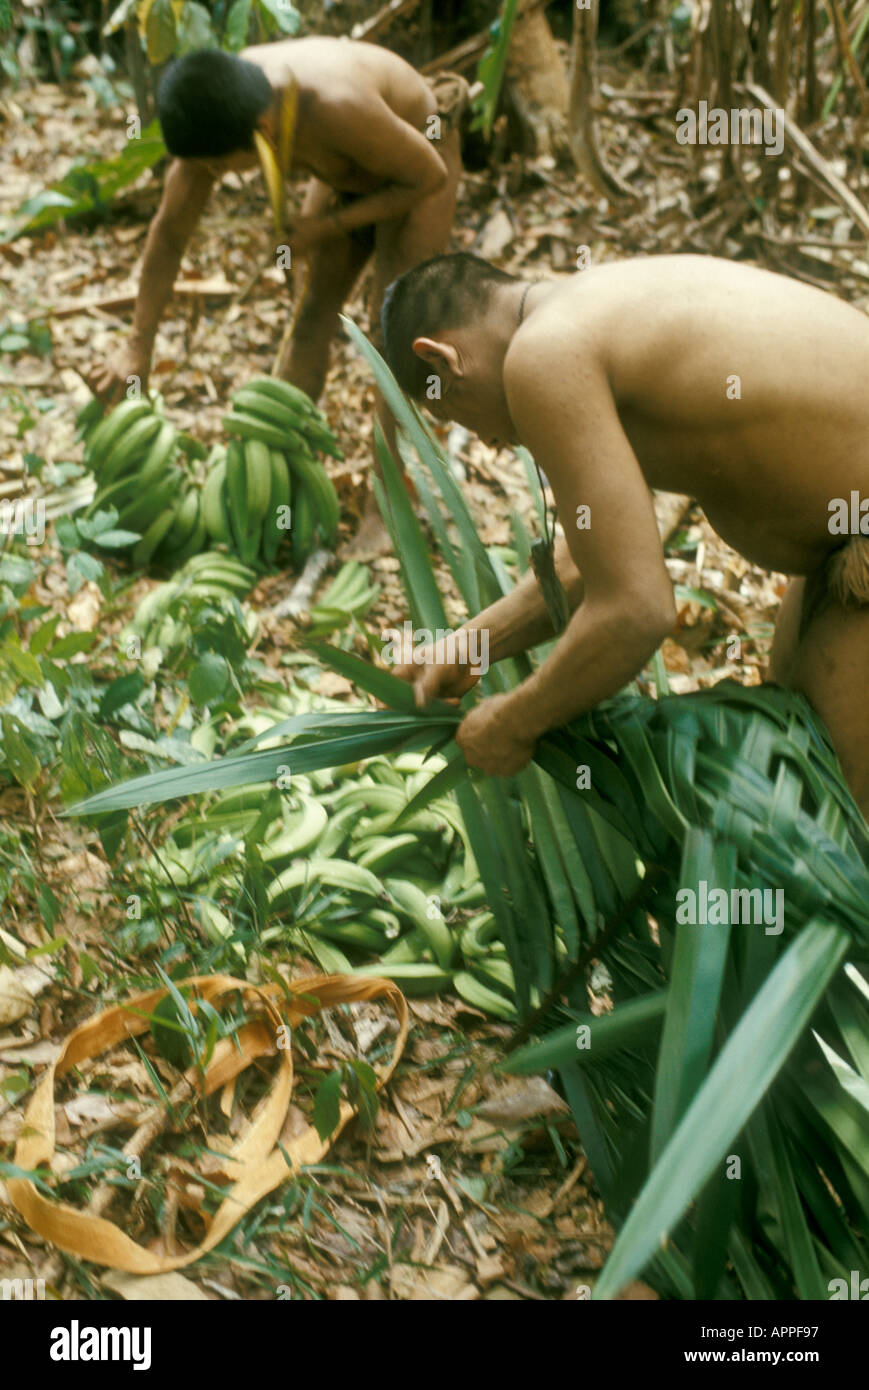 Verwendung von Waldprodukten durch die indigenen Bewohner Venezuelas Hoti (Hodi): Menschen, die einen Palmblattkorb für Bananen herstellen Stockfoto